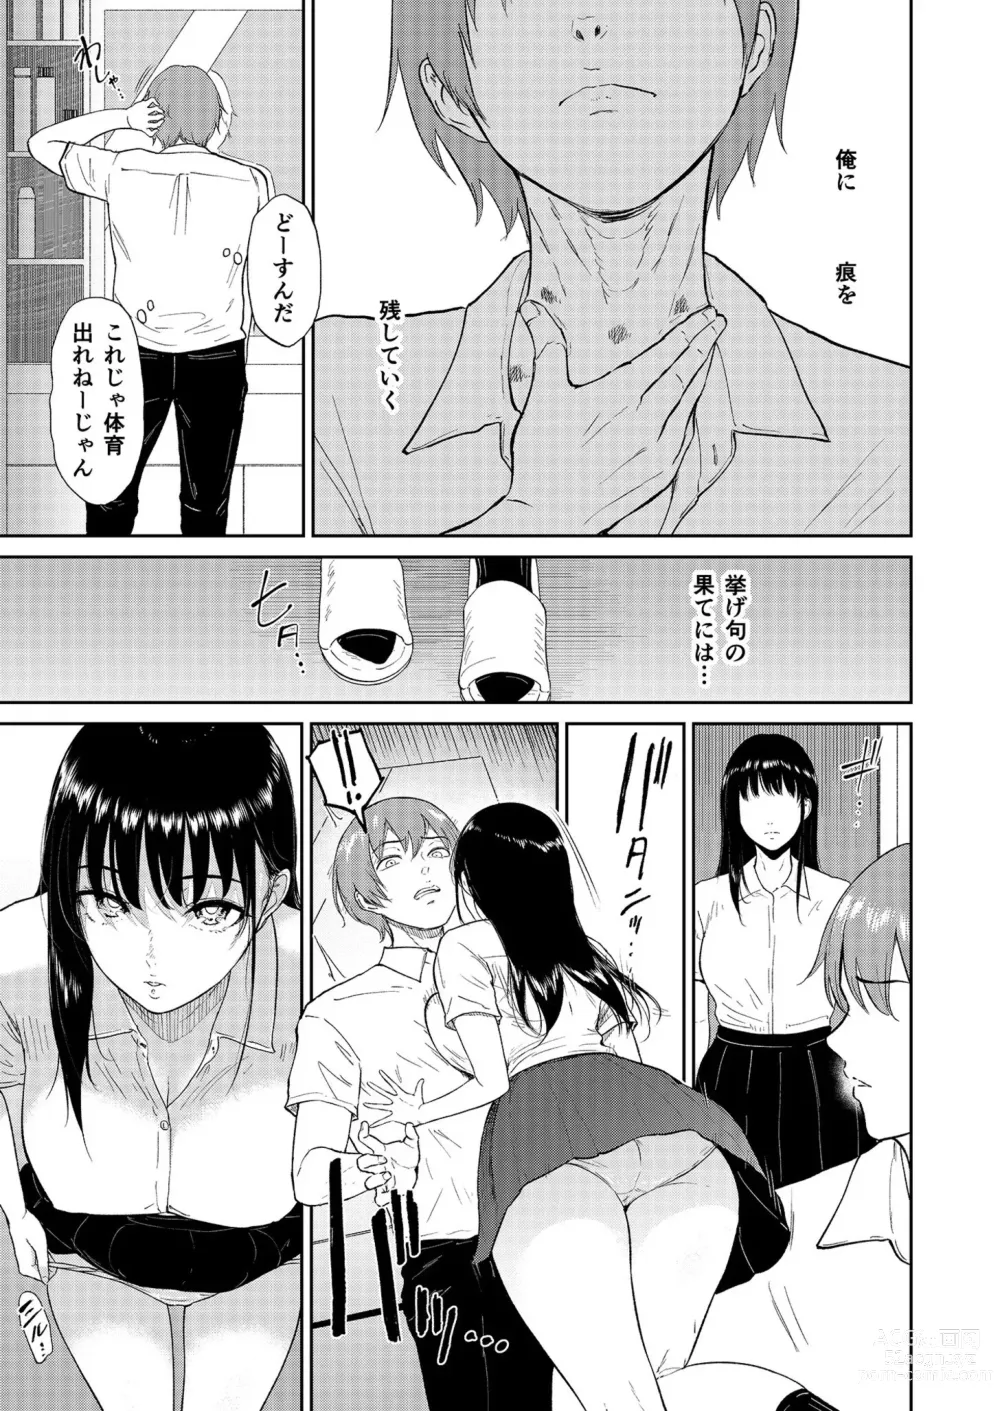 Page 5 of manga Iinarikko 4